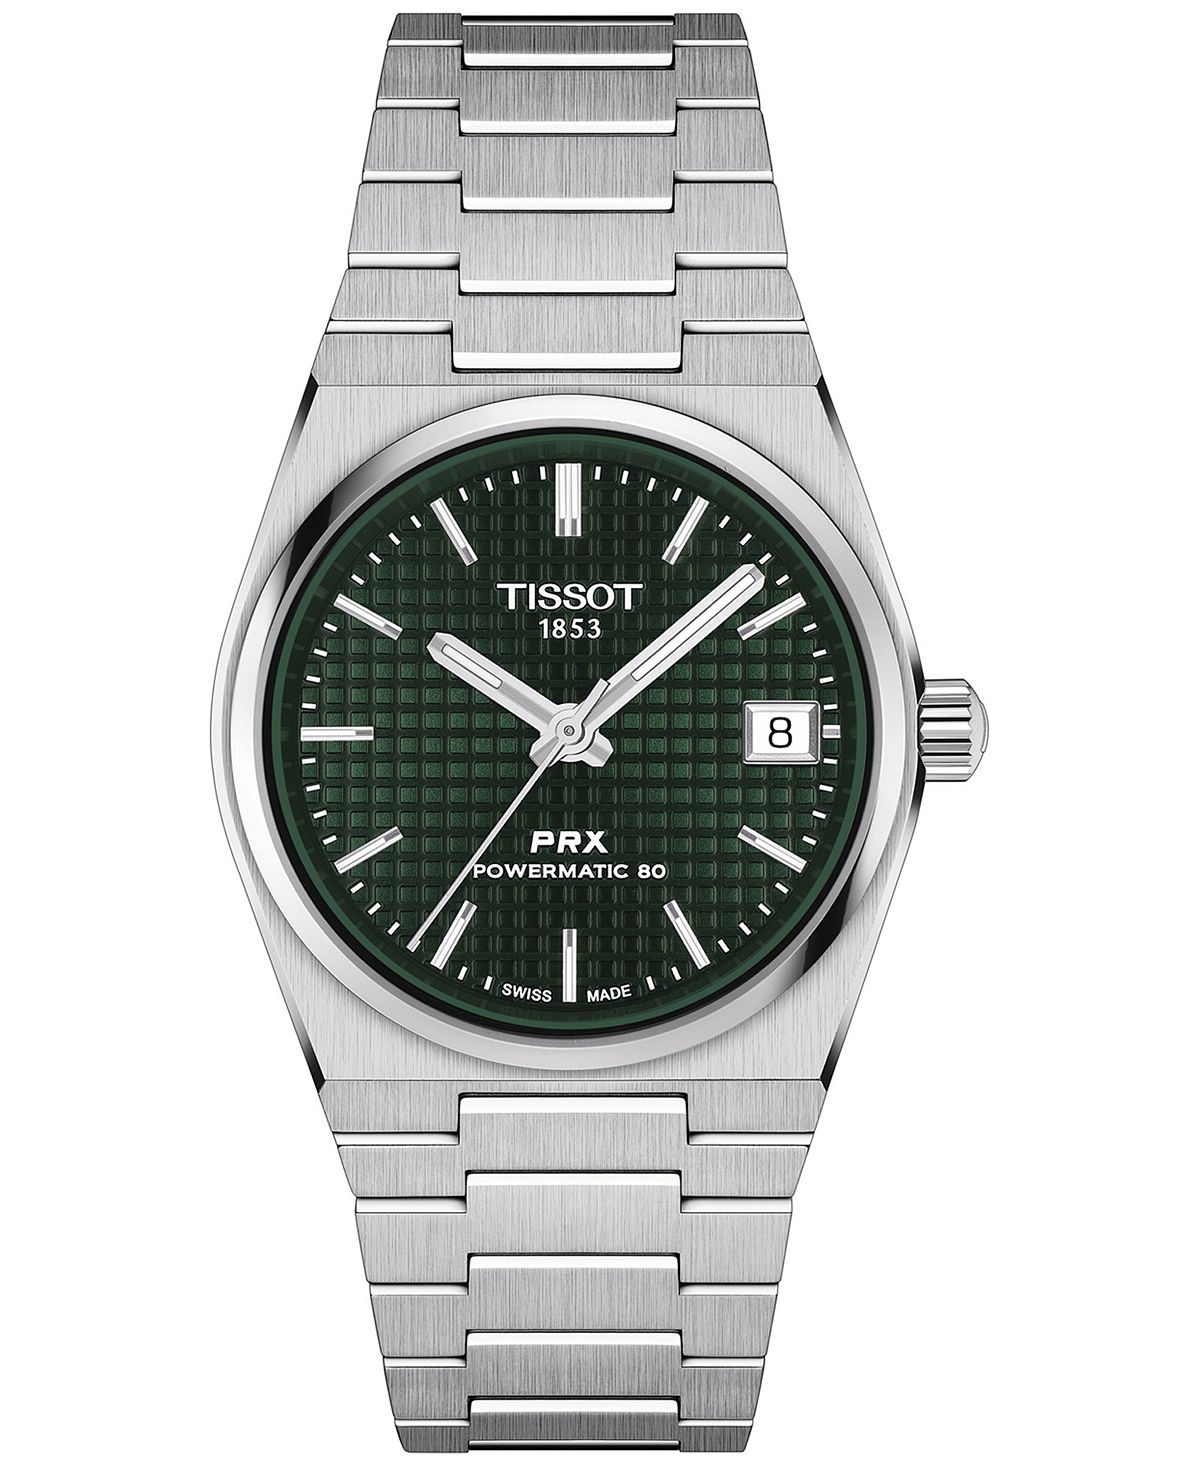 цена Унисекс Швейцарские автоматические часы PRX Powermatic 80 с браслетом из нержавеющей стали 35 мм Tissot